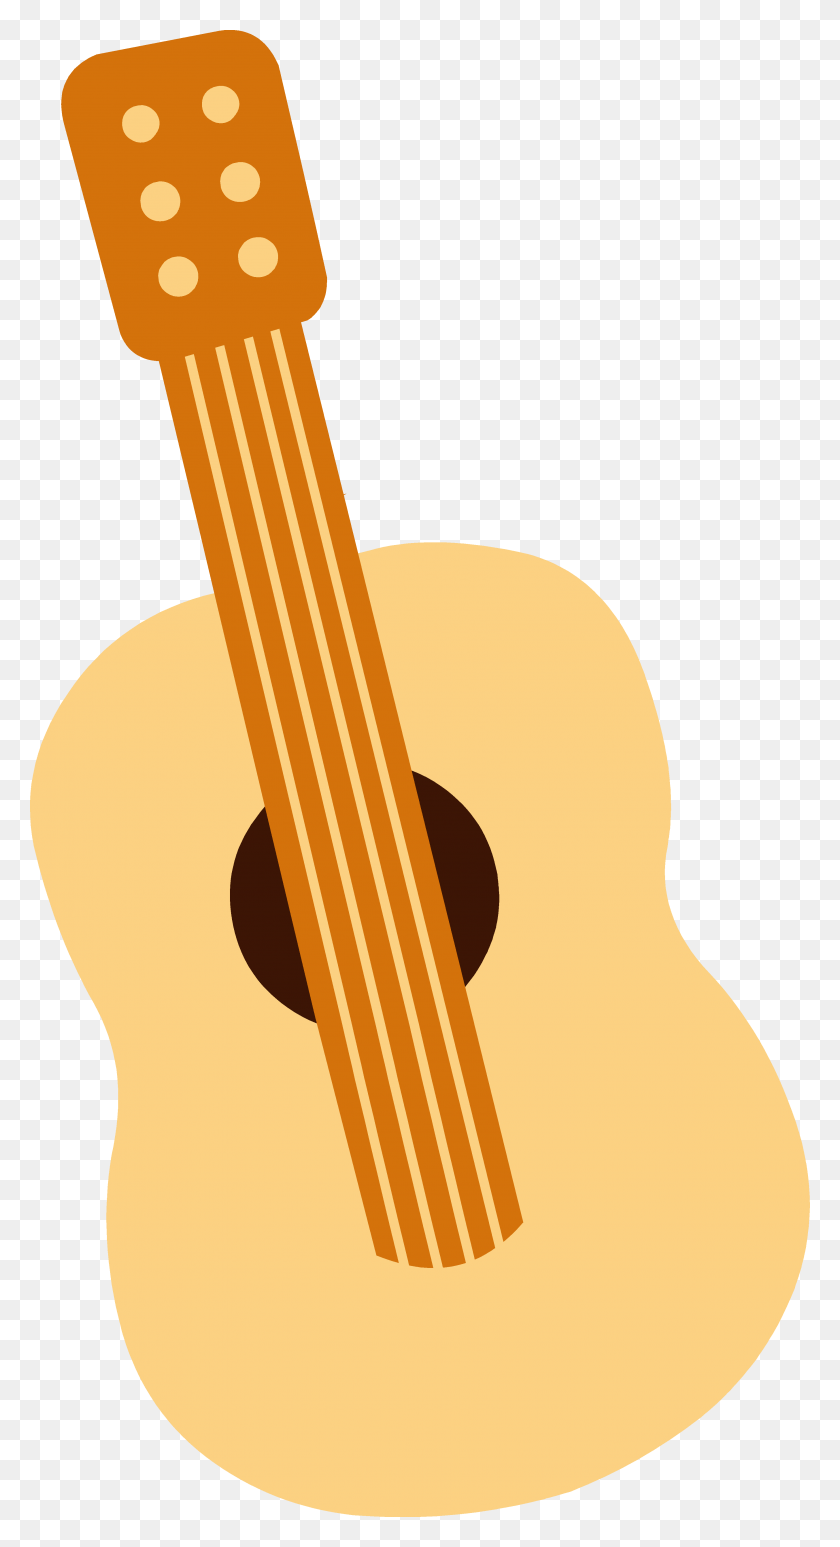 3487x6652 Descargar Png Maxim Guitar Clip Art Vector Free Clipart Image Cute Guitar Clipart, Actividades De Ocio, Instrumento Musical, Bajo Png